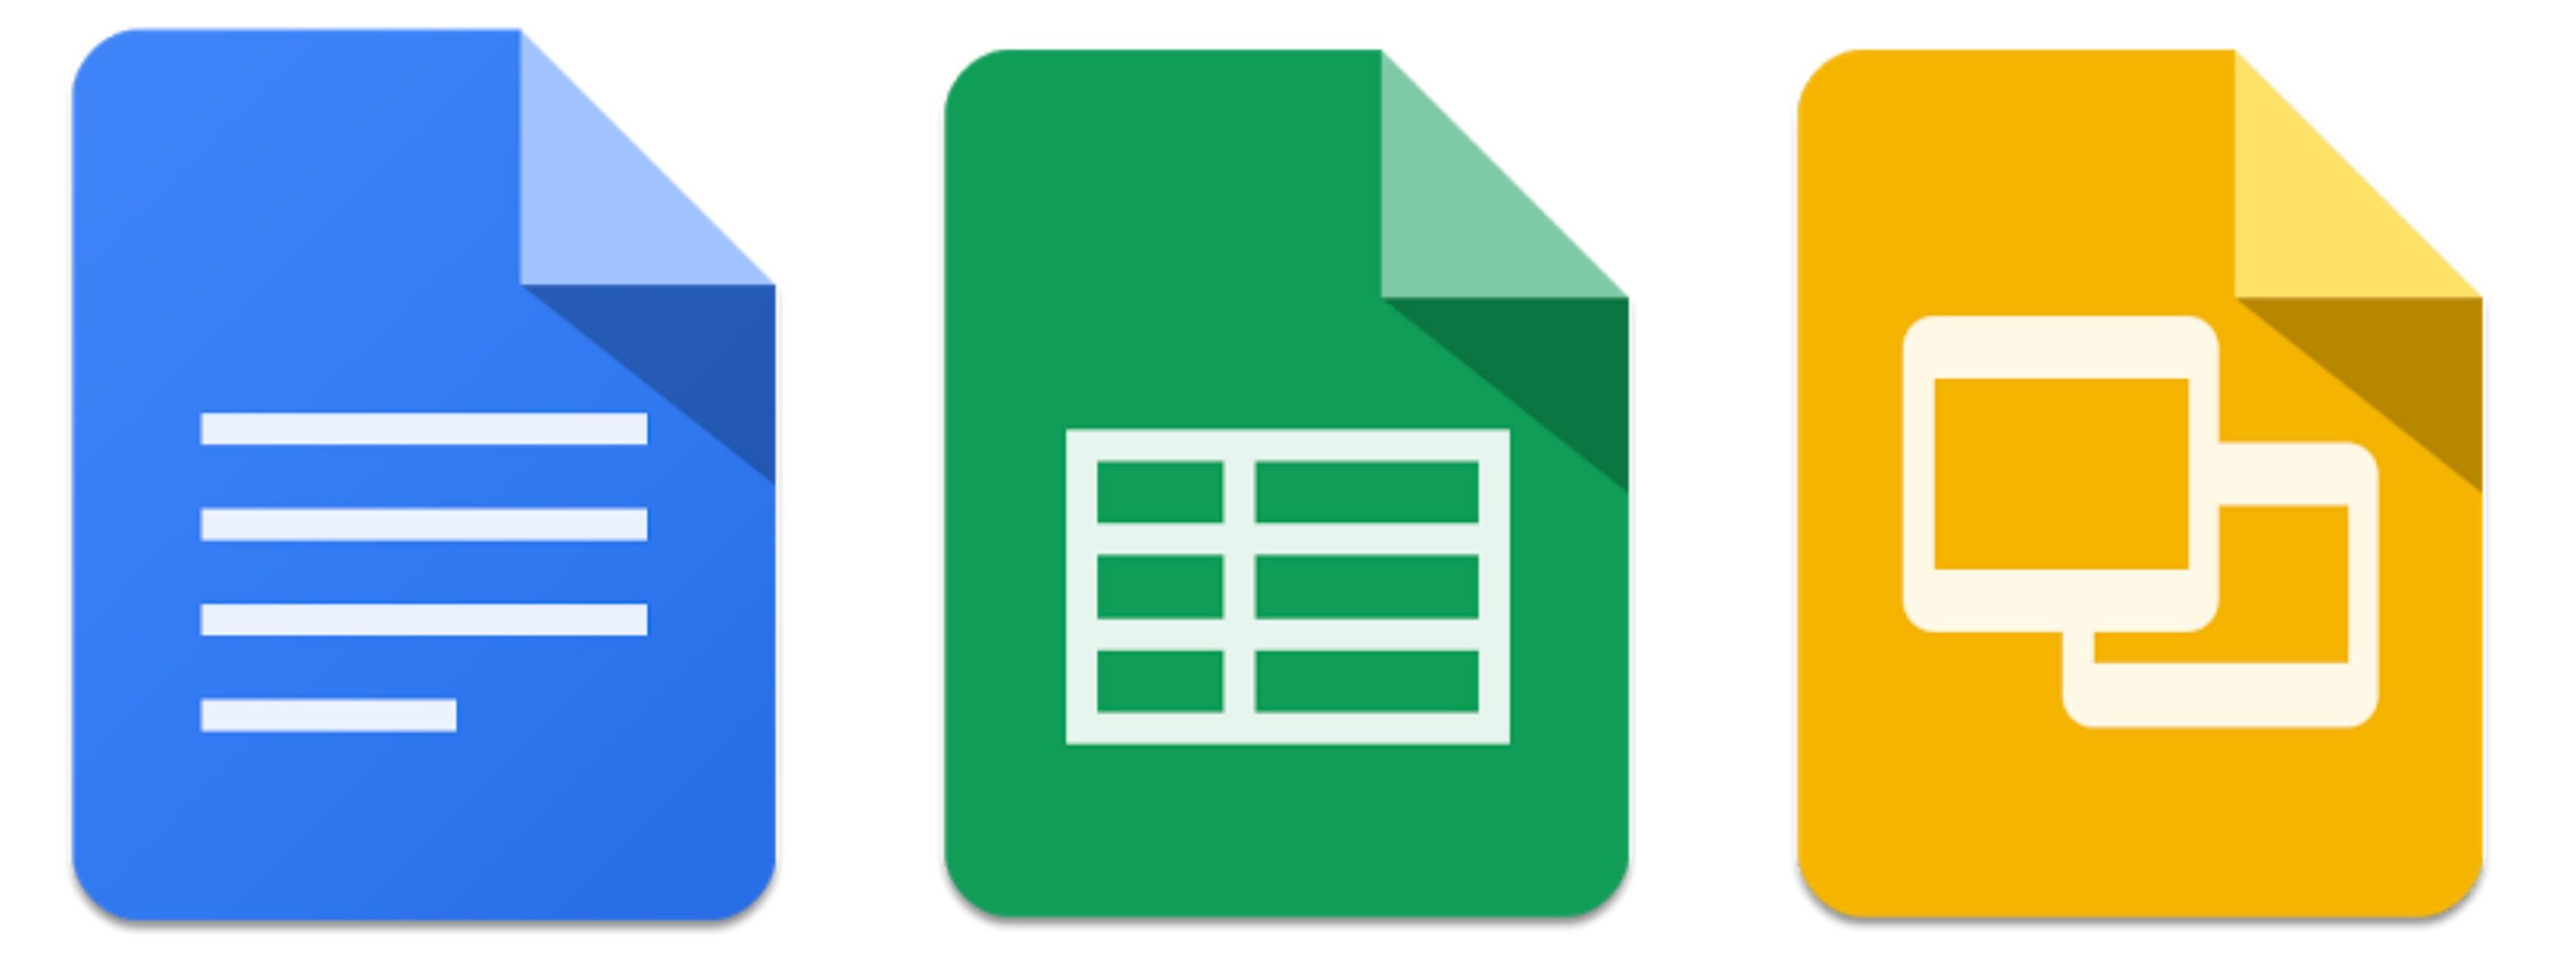 Google Docs API正式可用，可自动化文档任务和内容管理